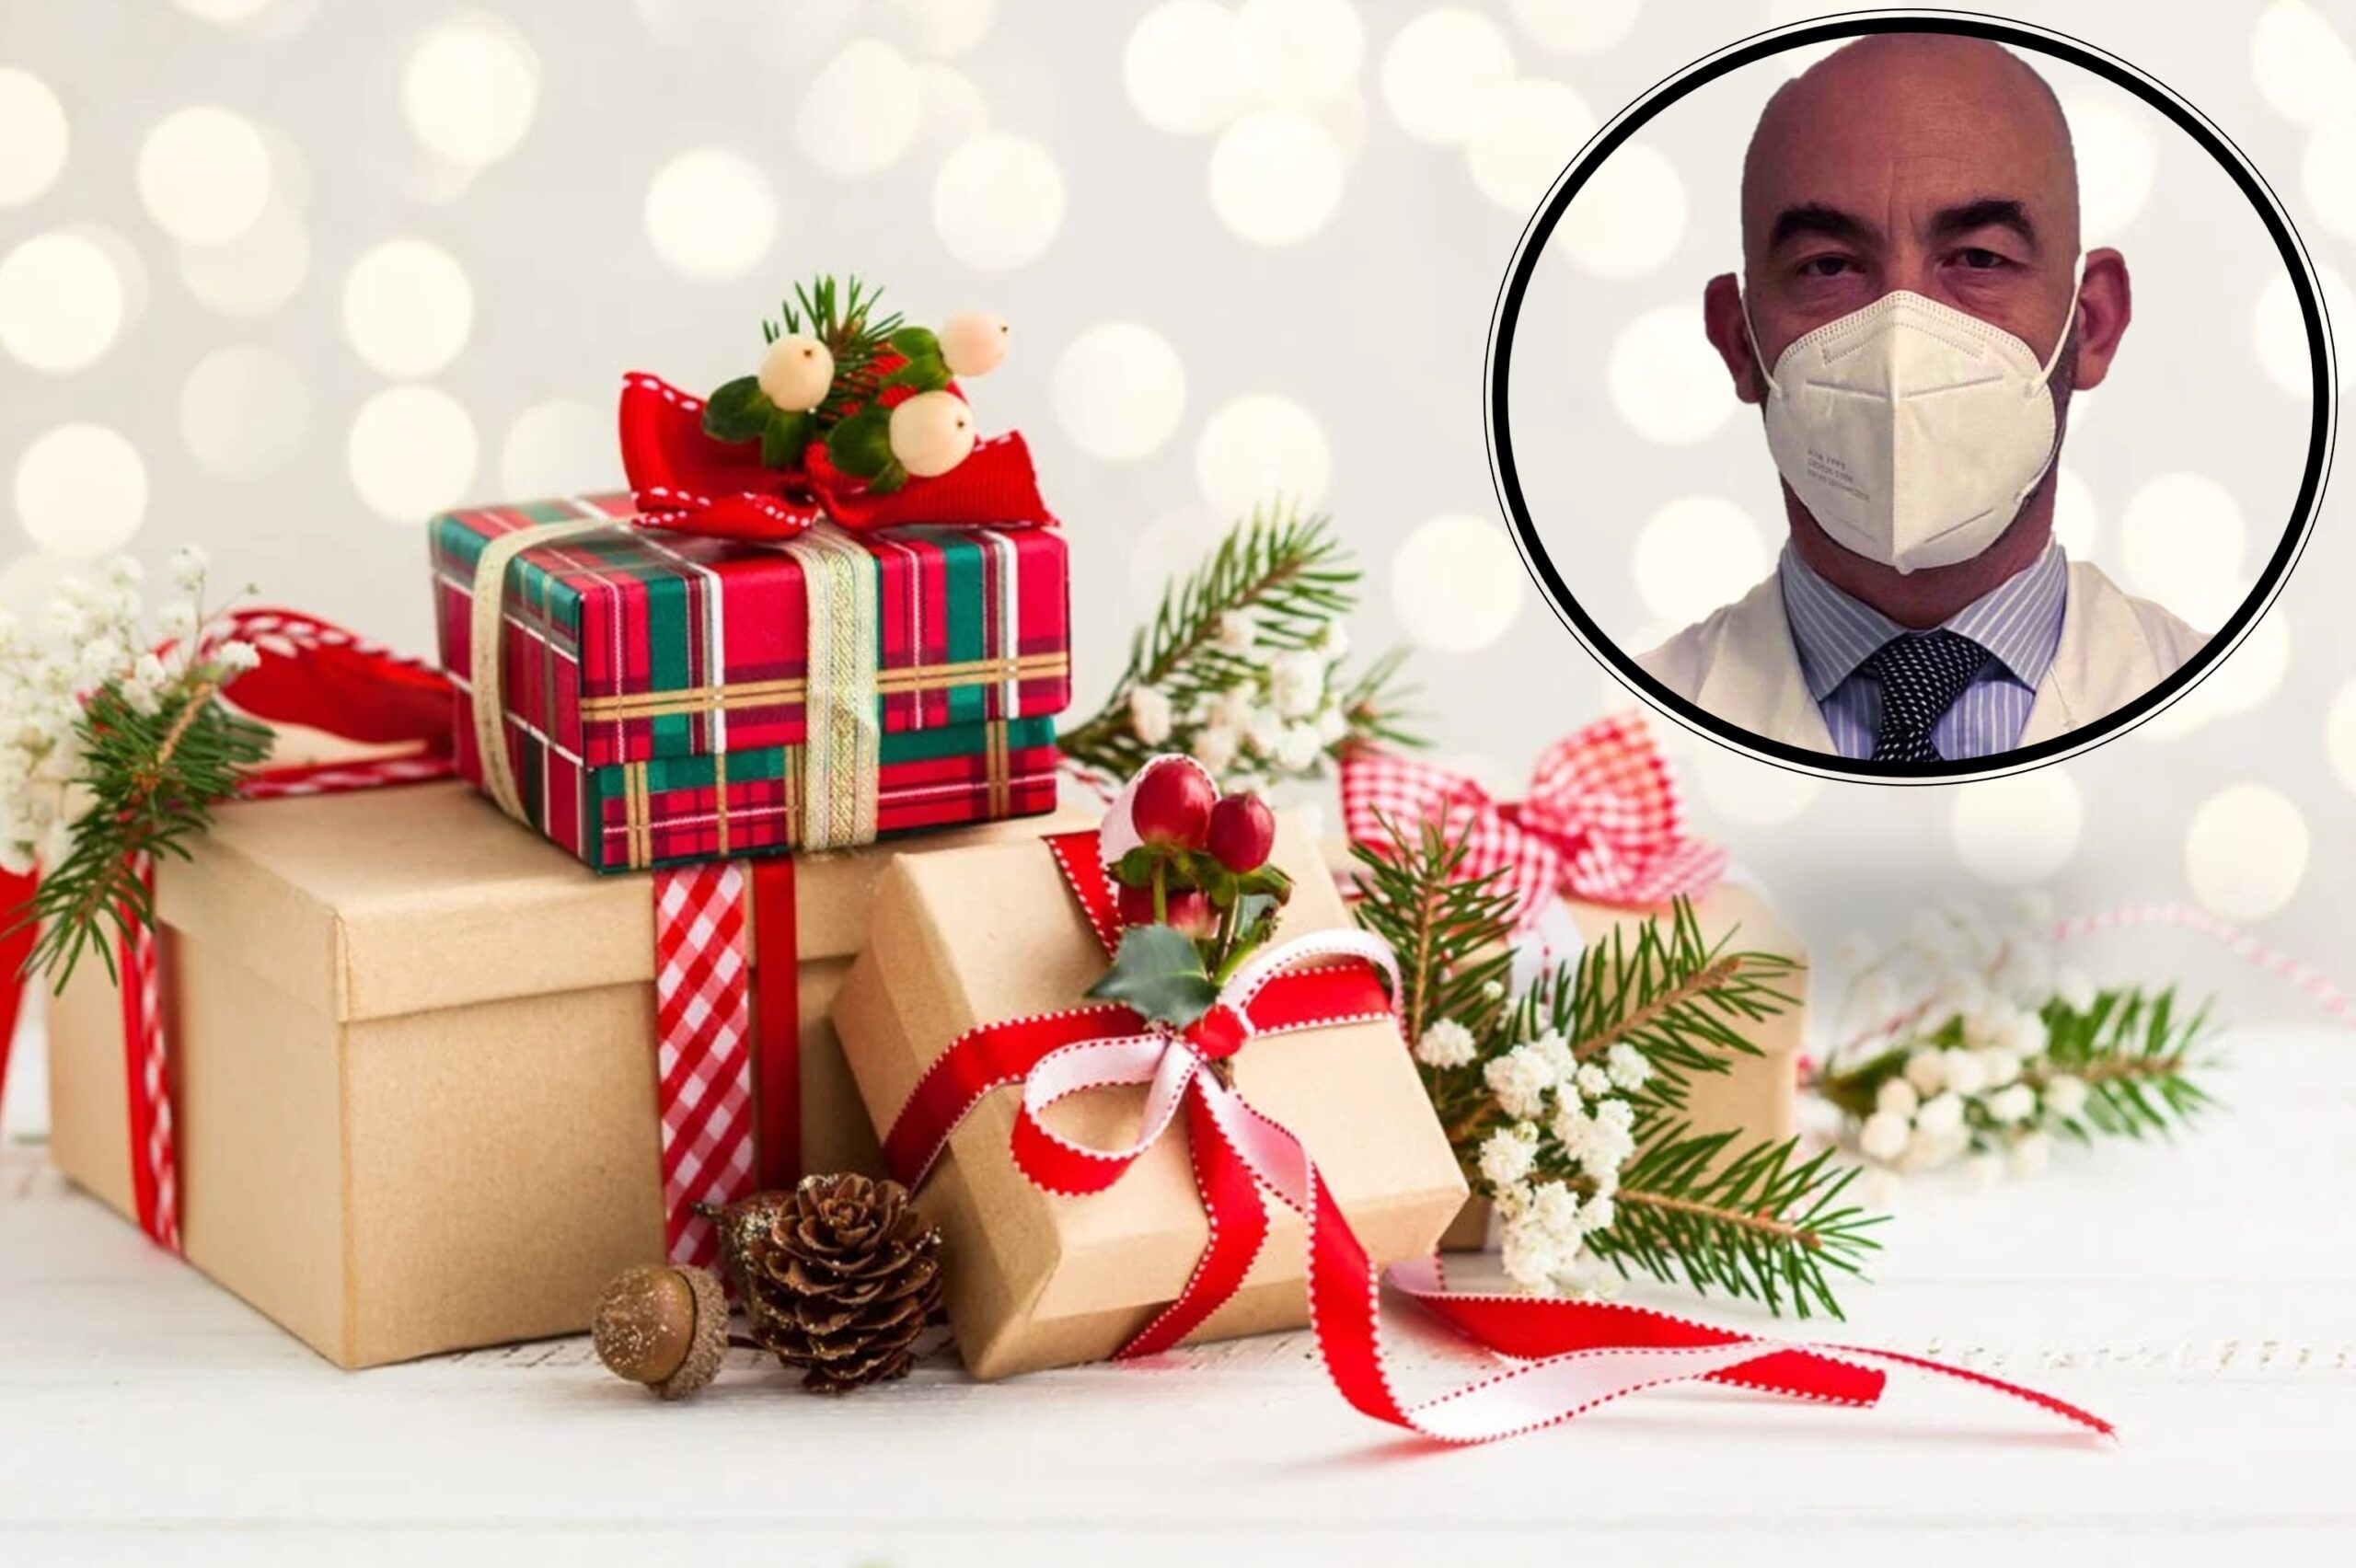 Matteo Bassetti: “gli anziani invece di correre a fare i regali vadano a fare il vaccino antinfluenzale”